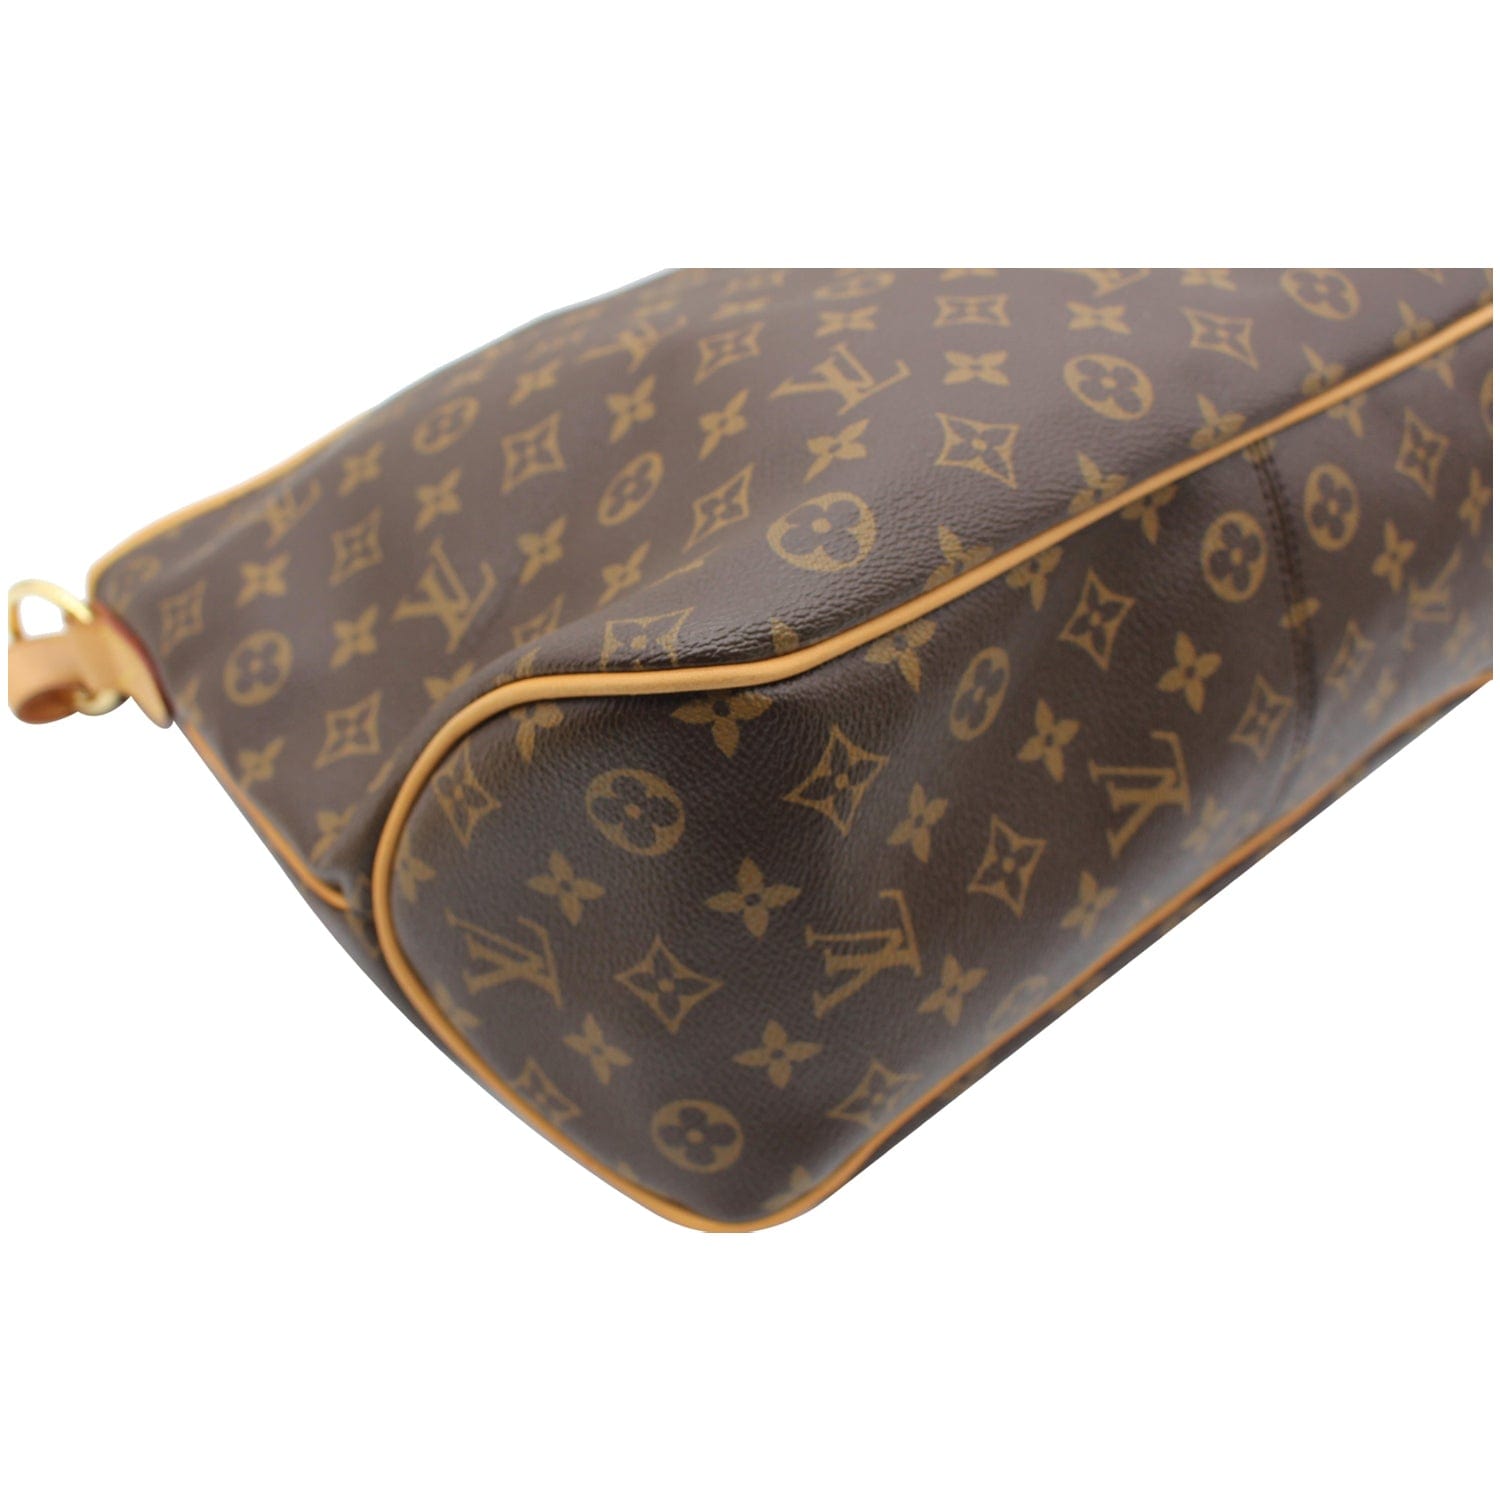 Louis Vuitton Delightful PM Monogram Canvas Top Handle Bag on SALE